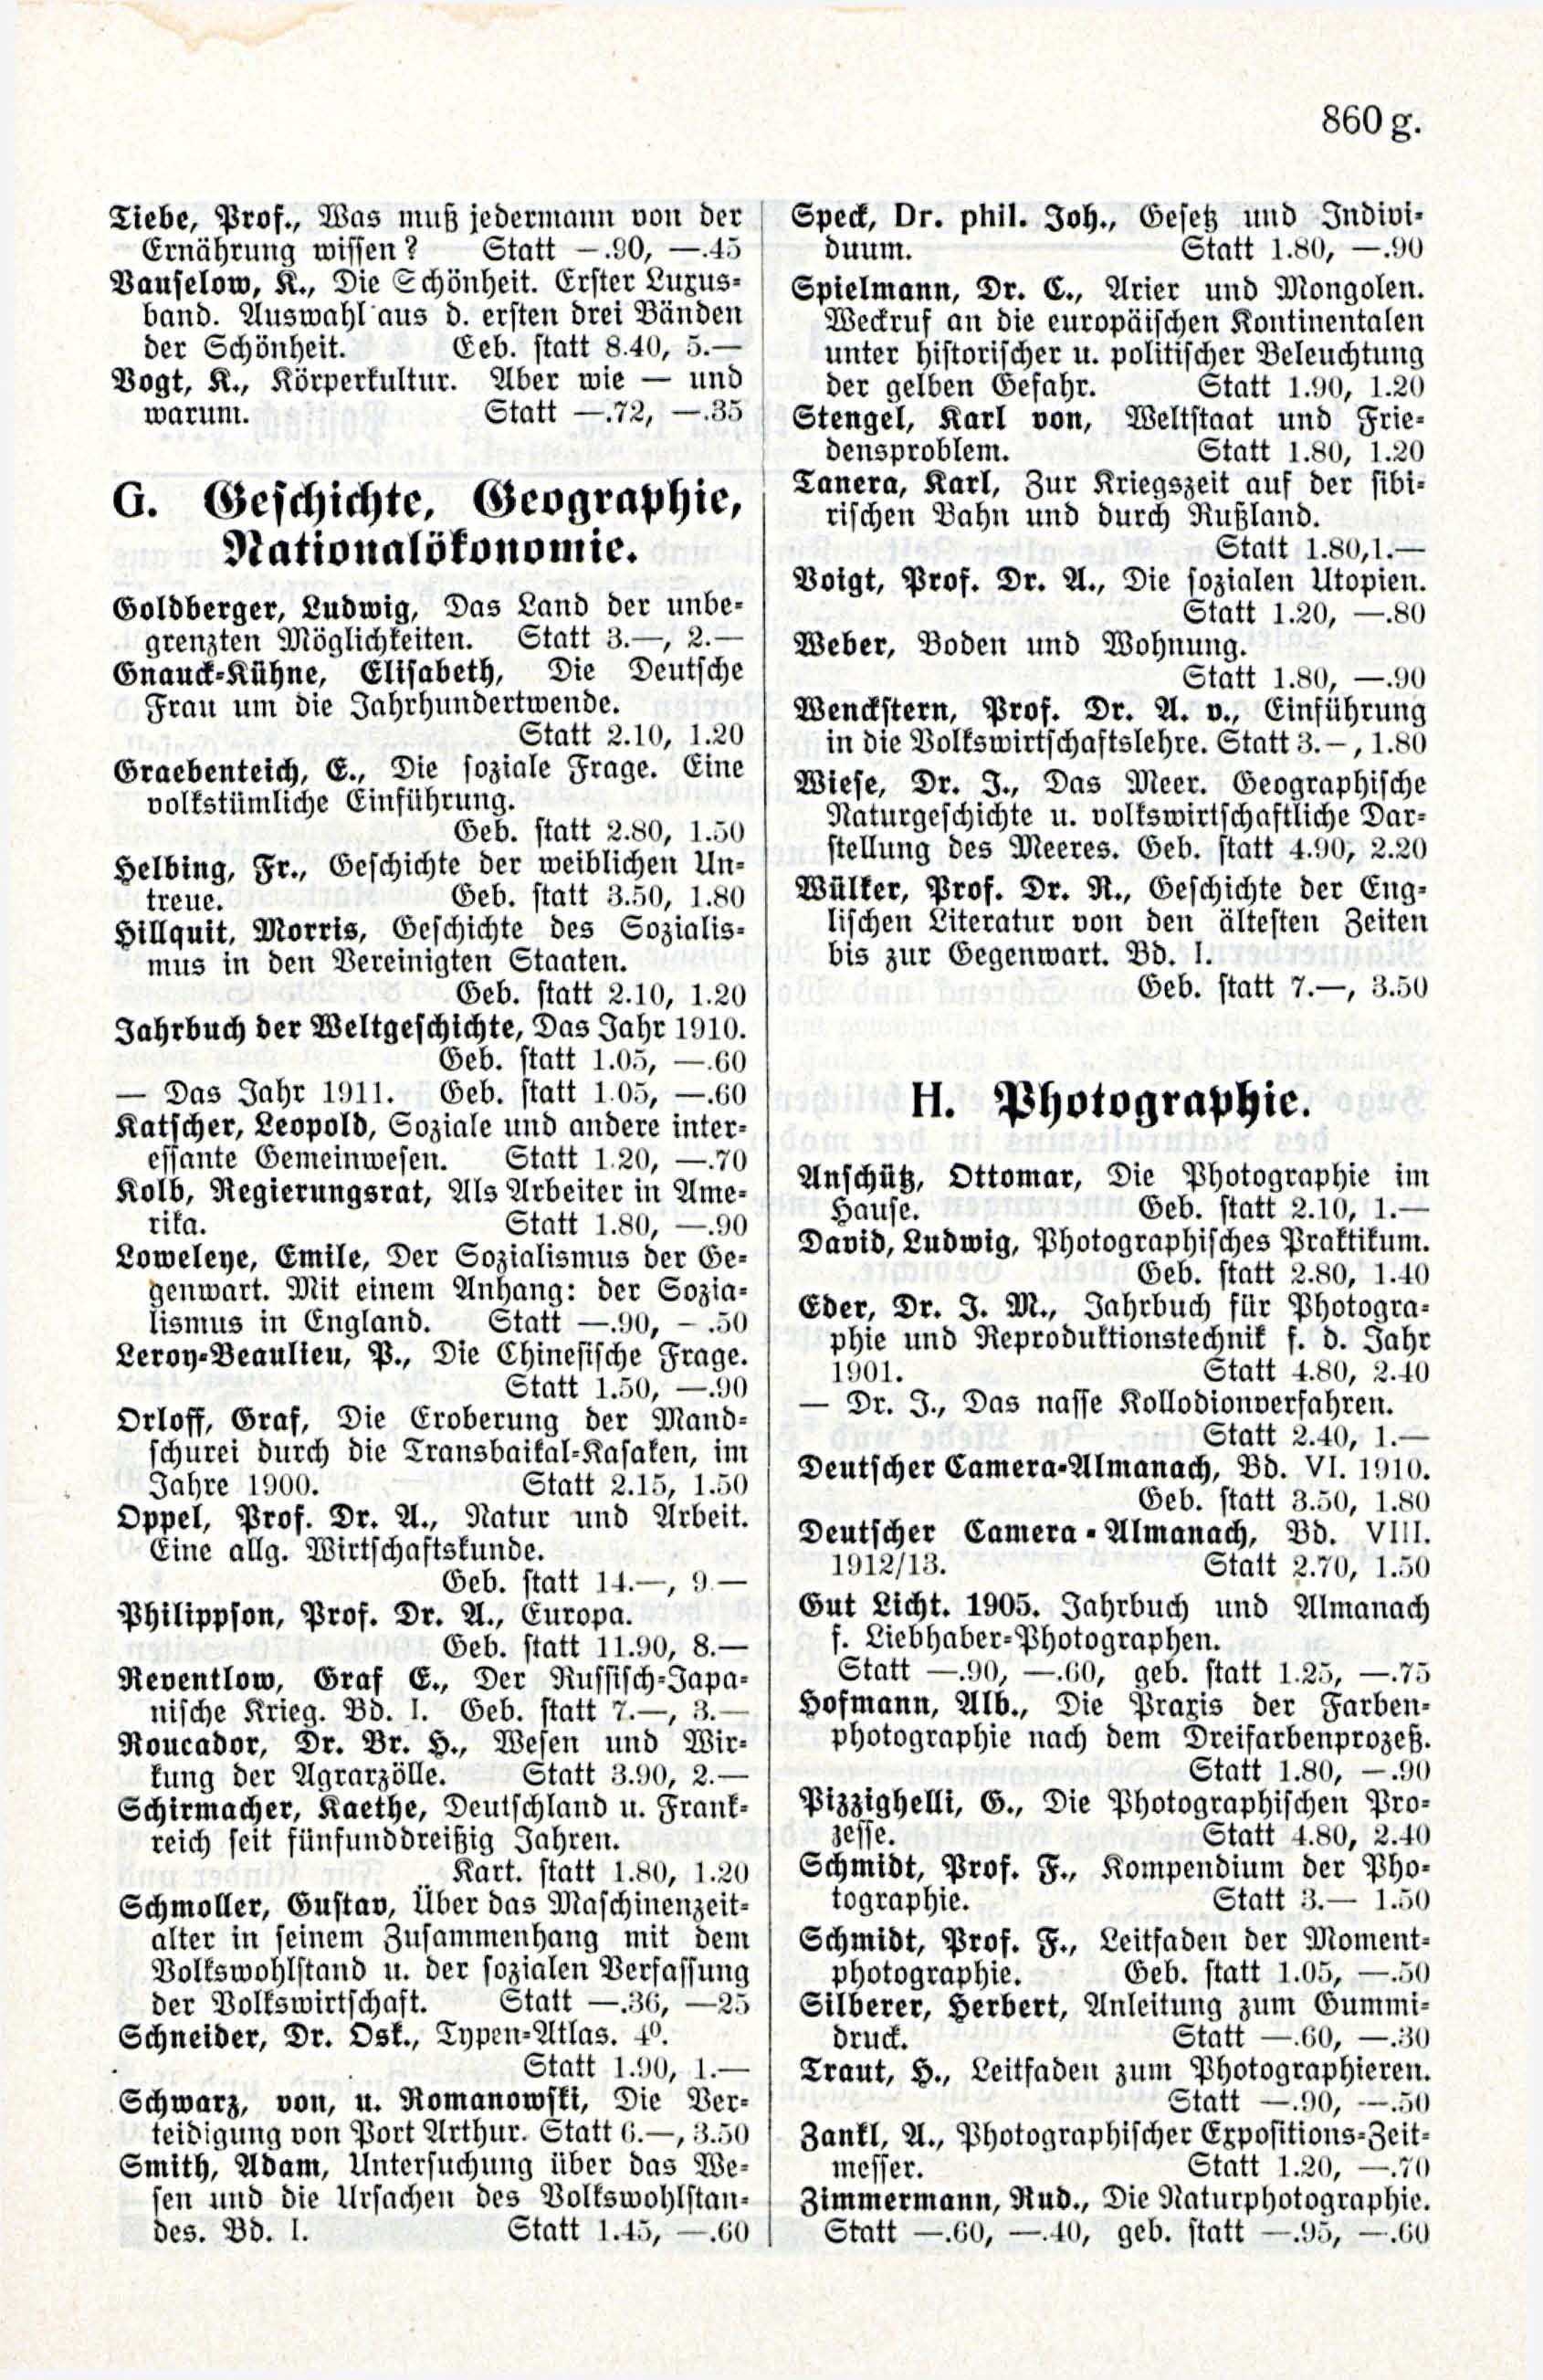 Deutsche Monatsschrift für Russland [3/12] (1914) | 81. (865) Main body of text